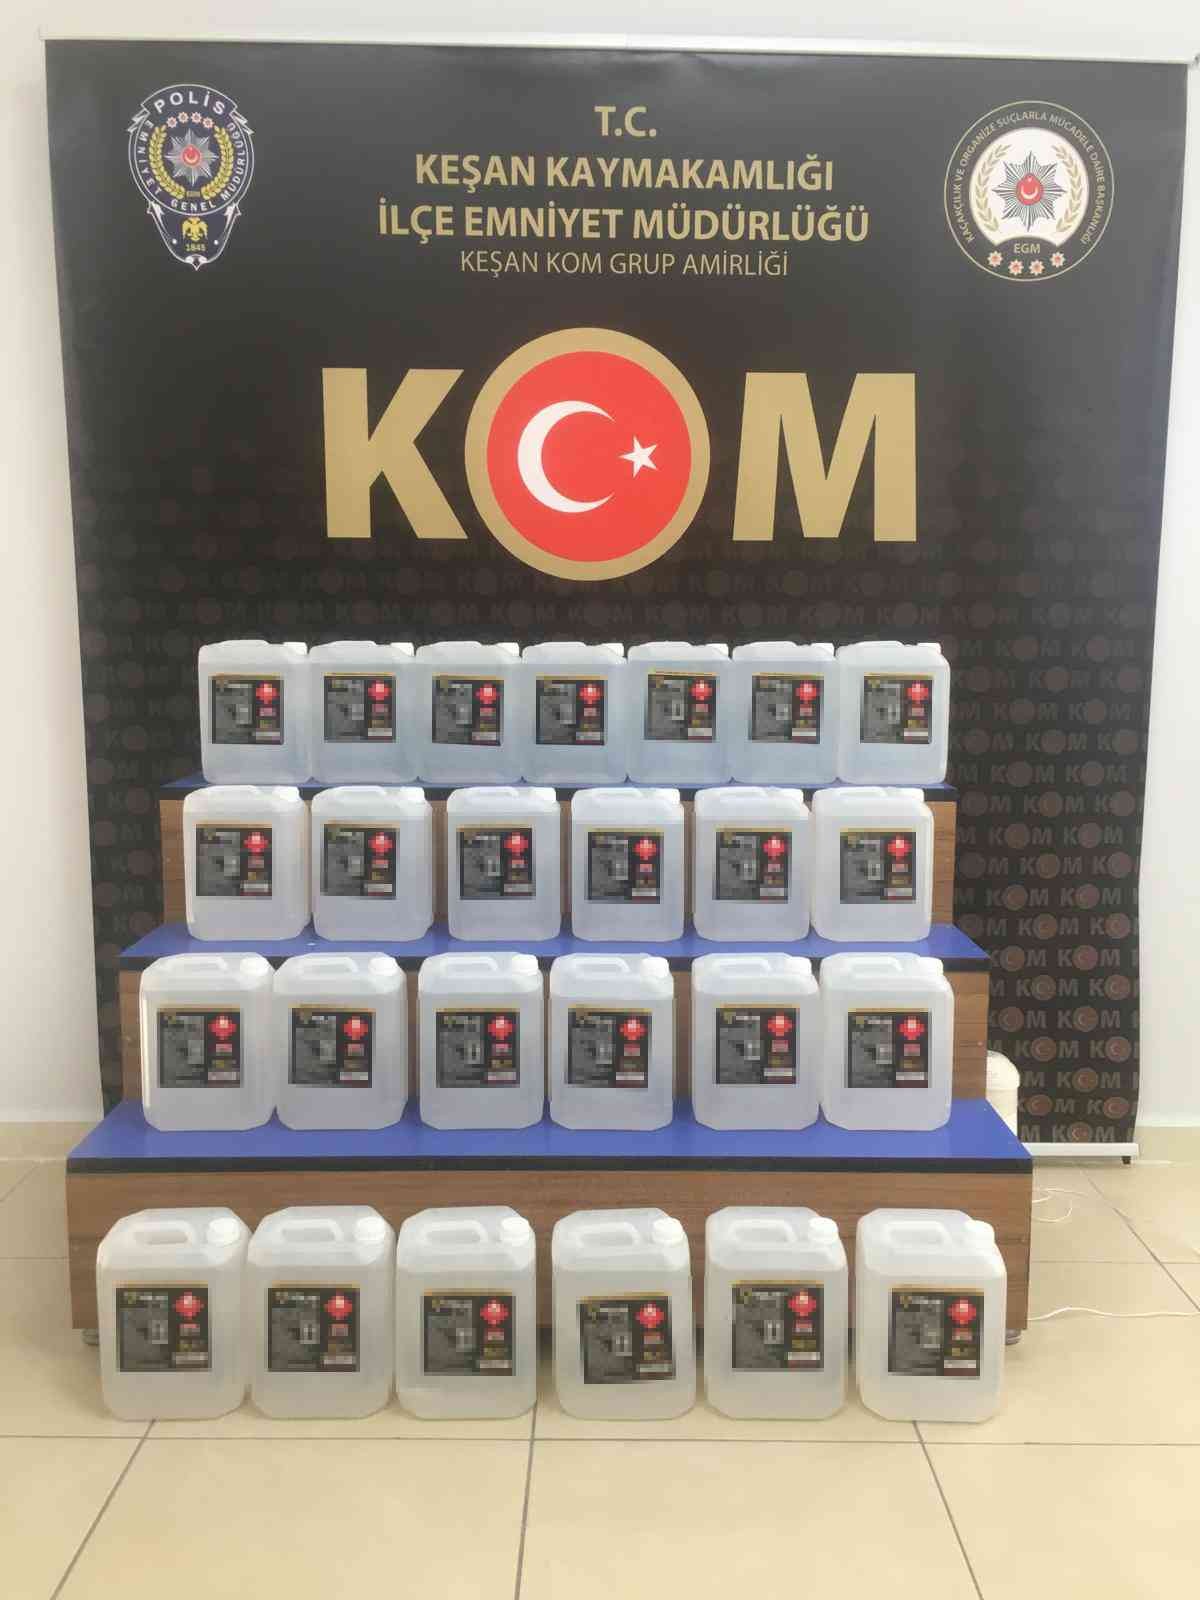 Edirne’nin Keşan ilçesinde polis ekipleri tarafından ilçe girişinde durdurulan bir araçta yapılan aramada 125 litre sahte içki imali için ...